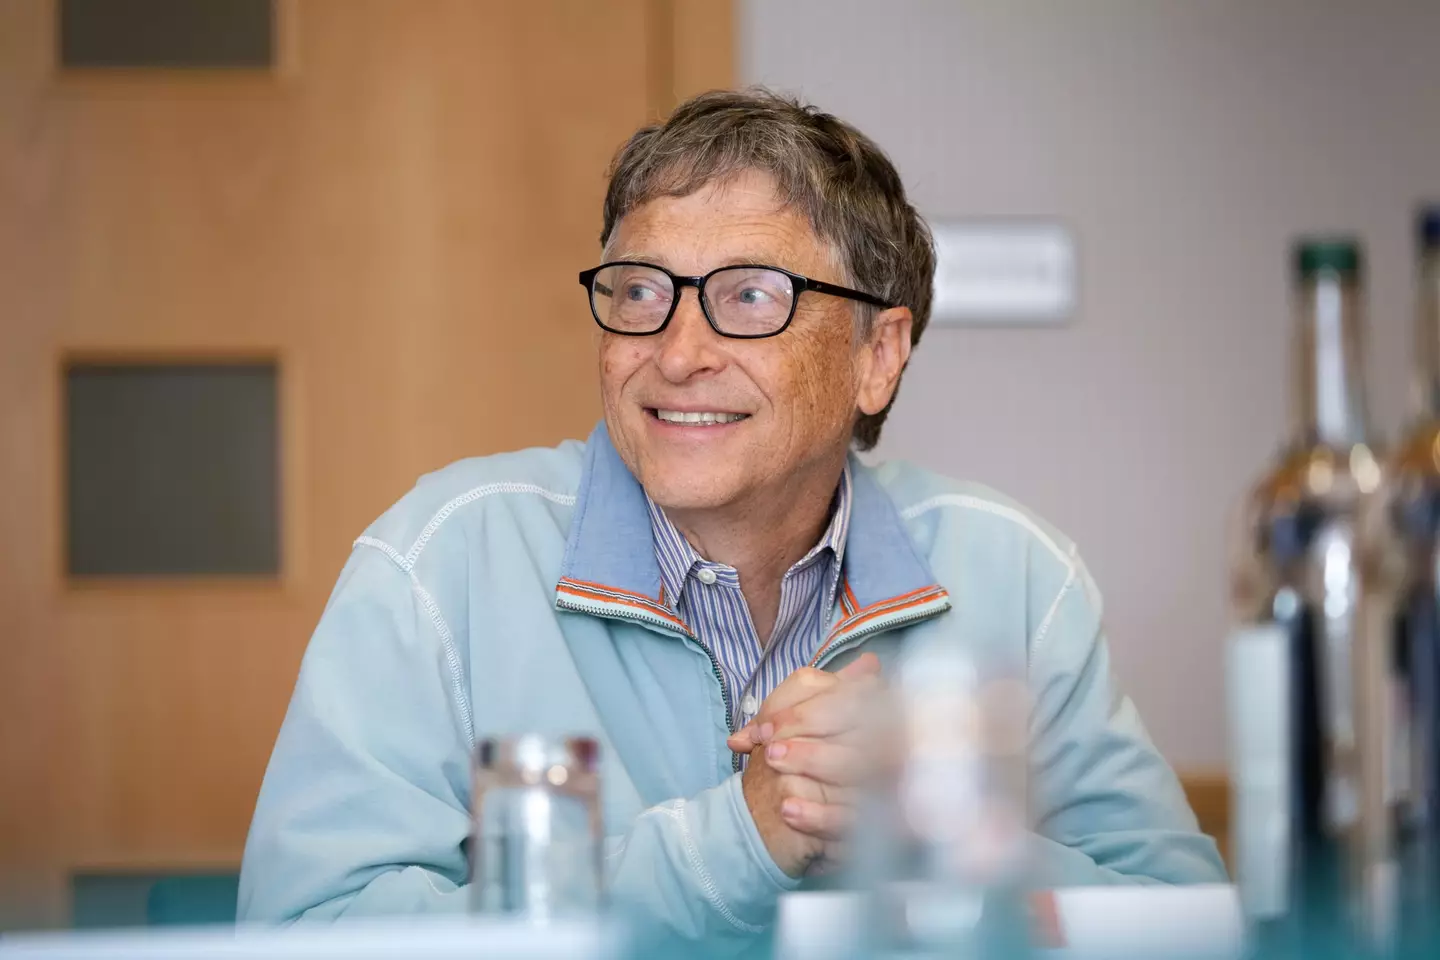 Bill Gates had the last laugh.